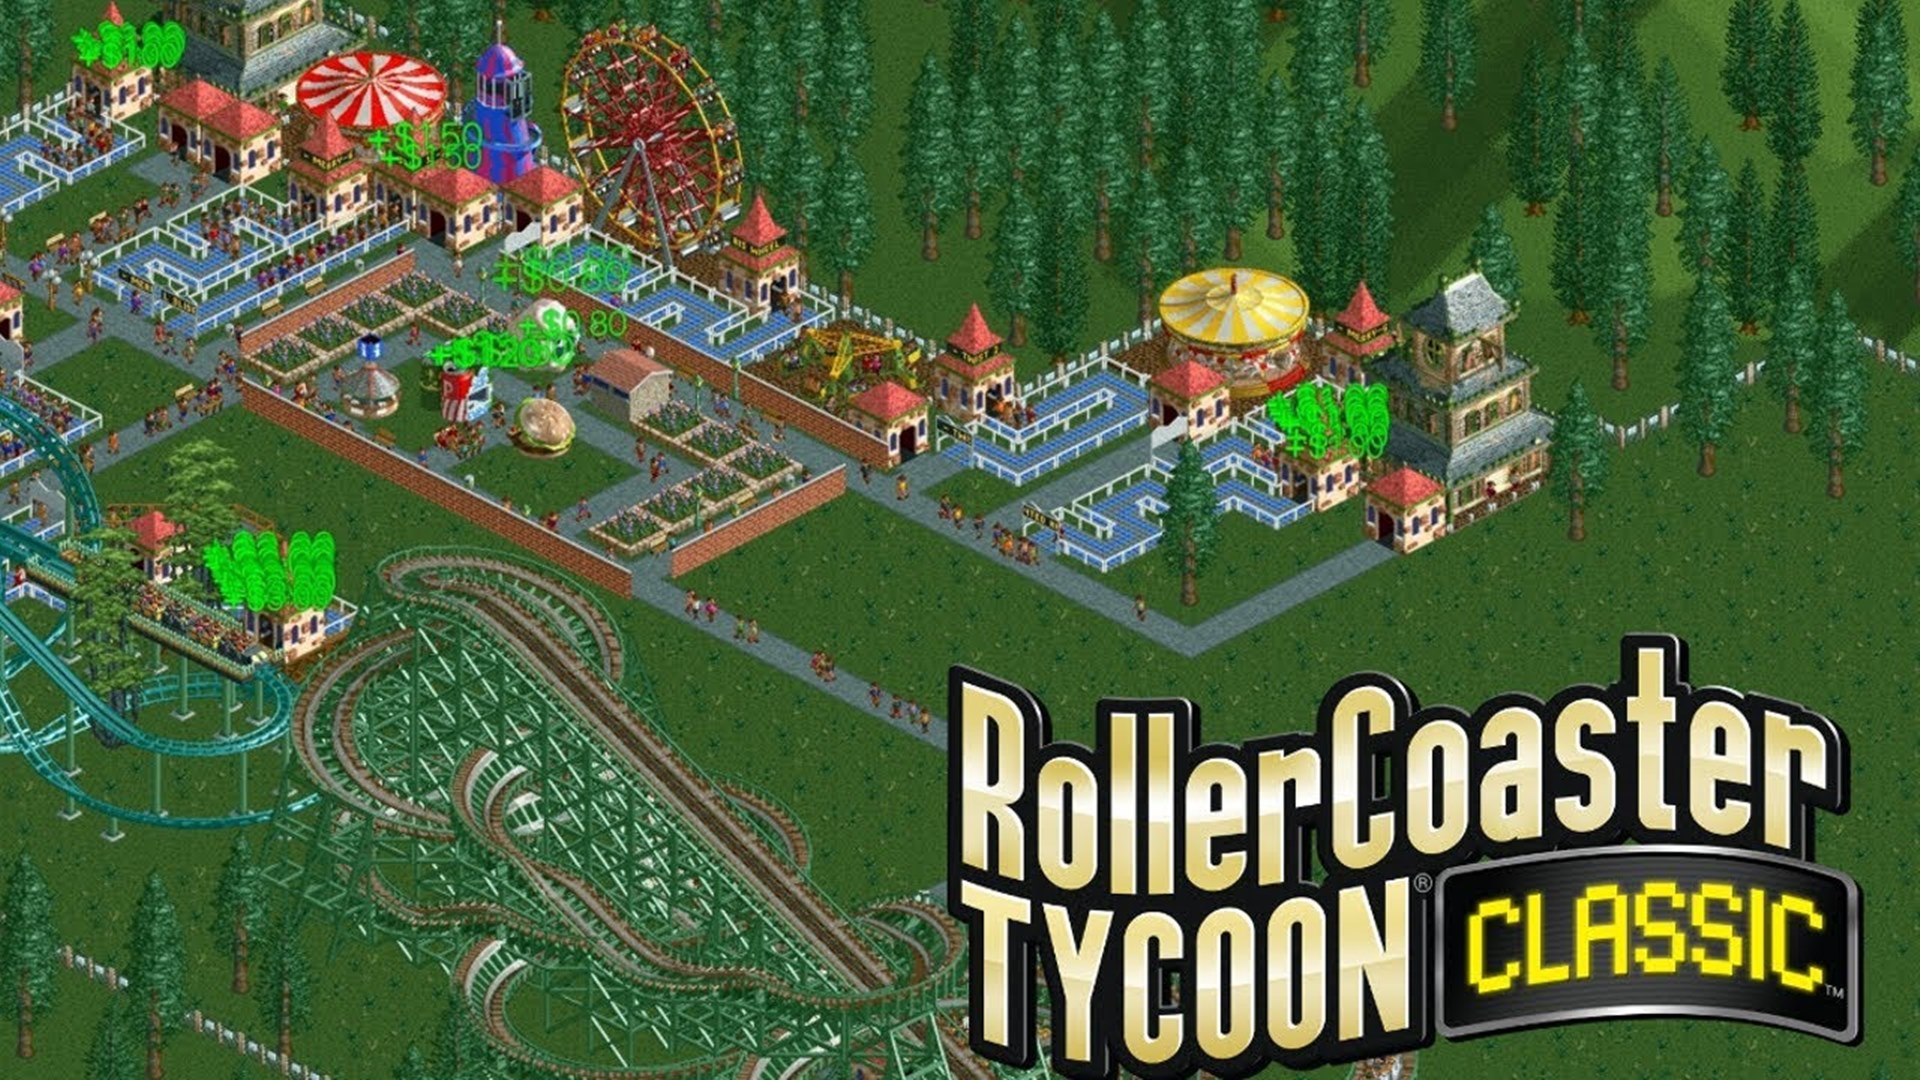 RollerCoaster Tycoon Classic está disponível para PC e smartphones atualmente.